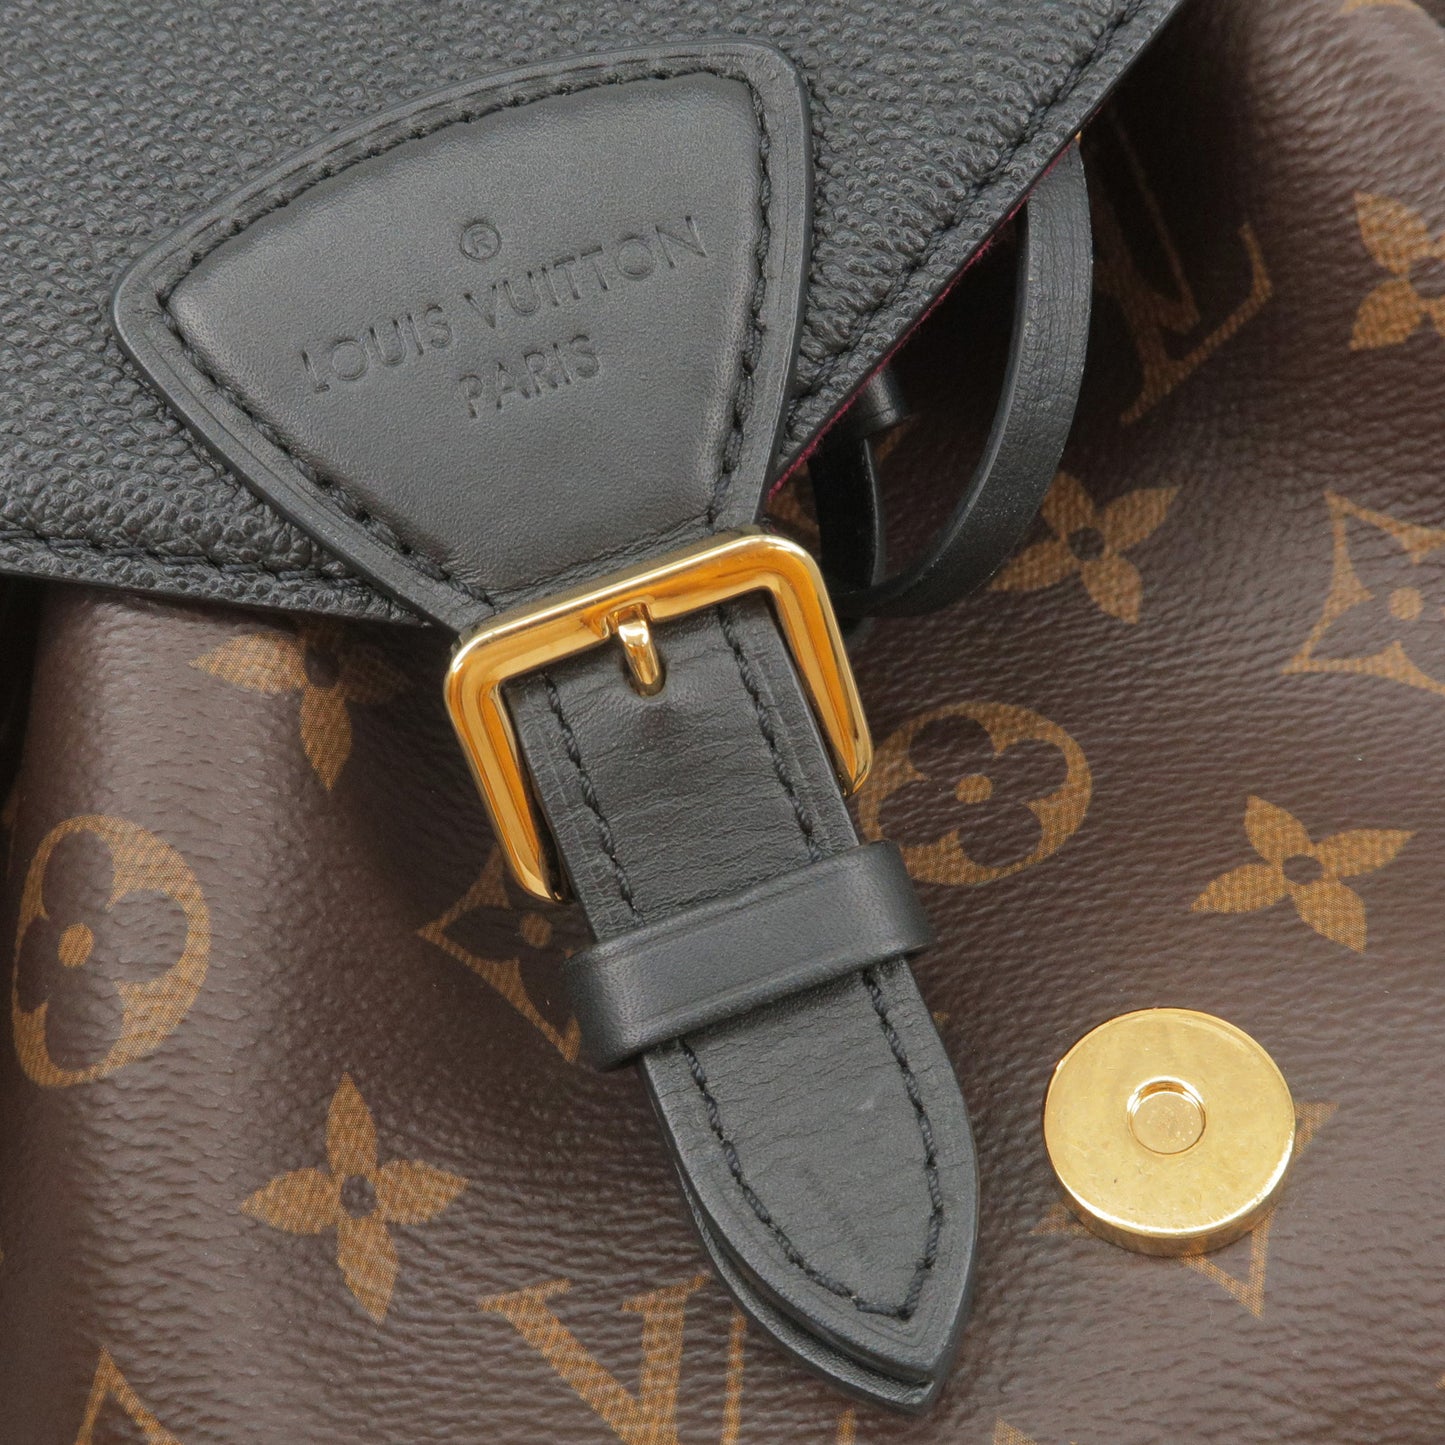 Shop Louis Vuitton Montsouris pm (M45515) by LESSISMORE☆